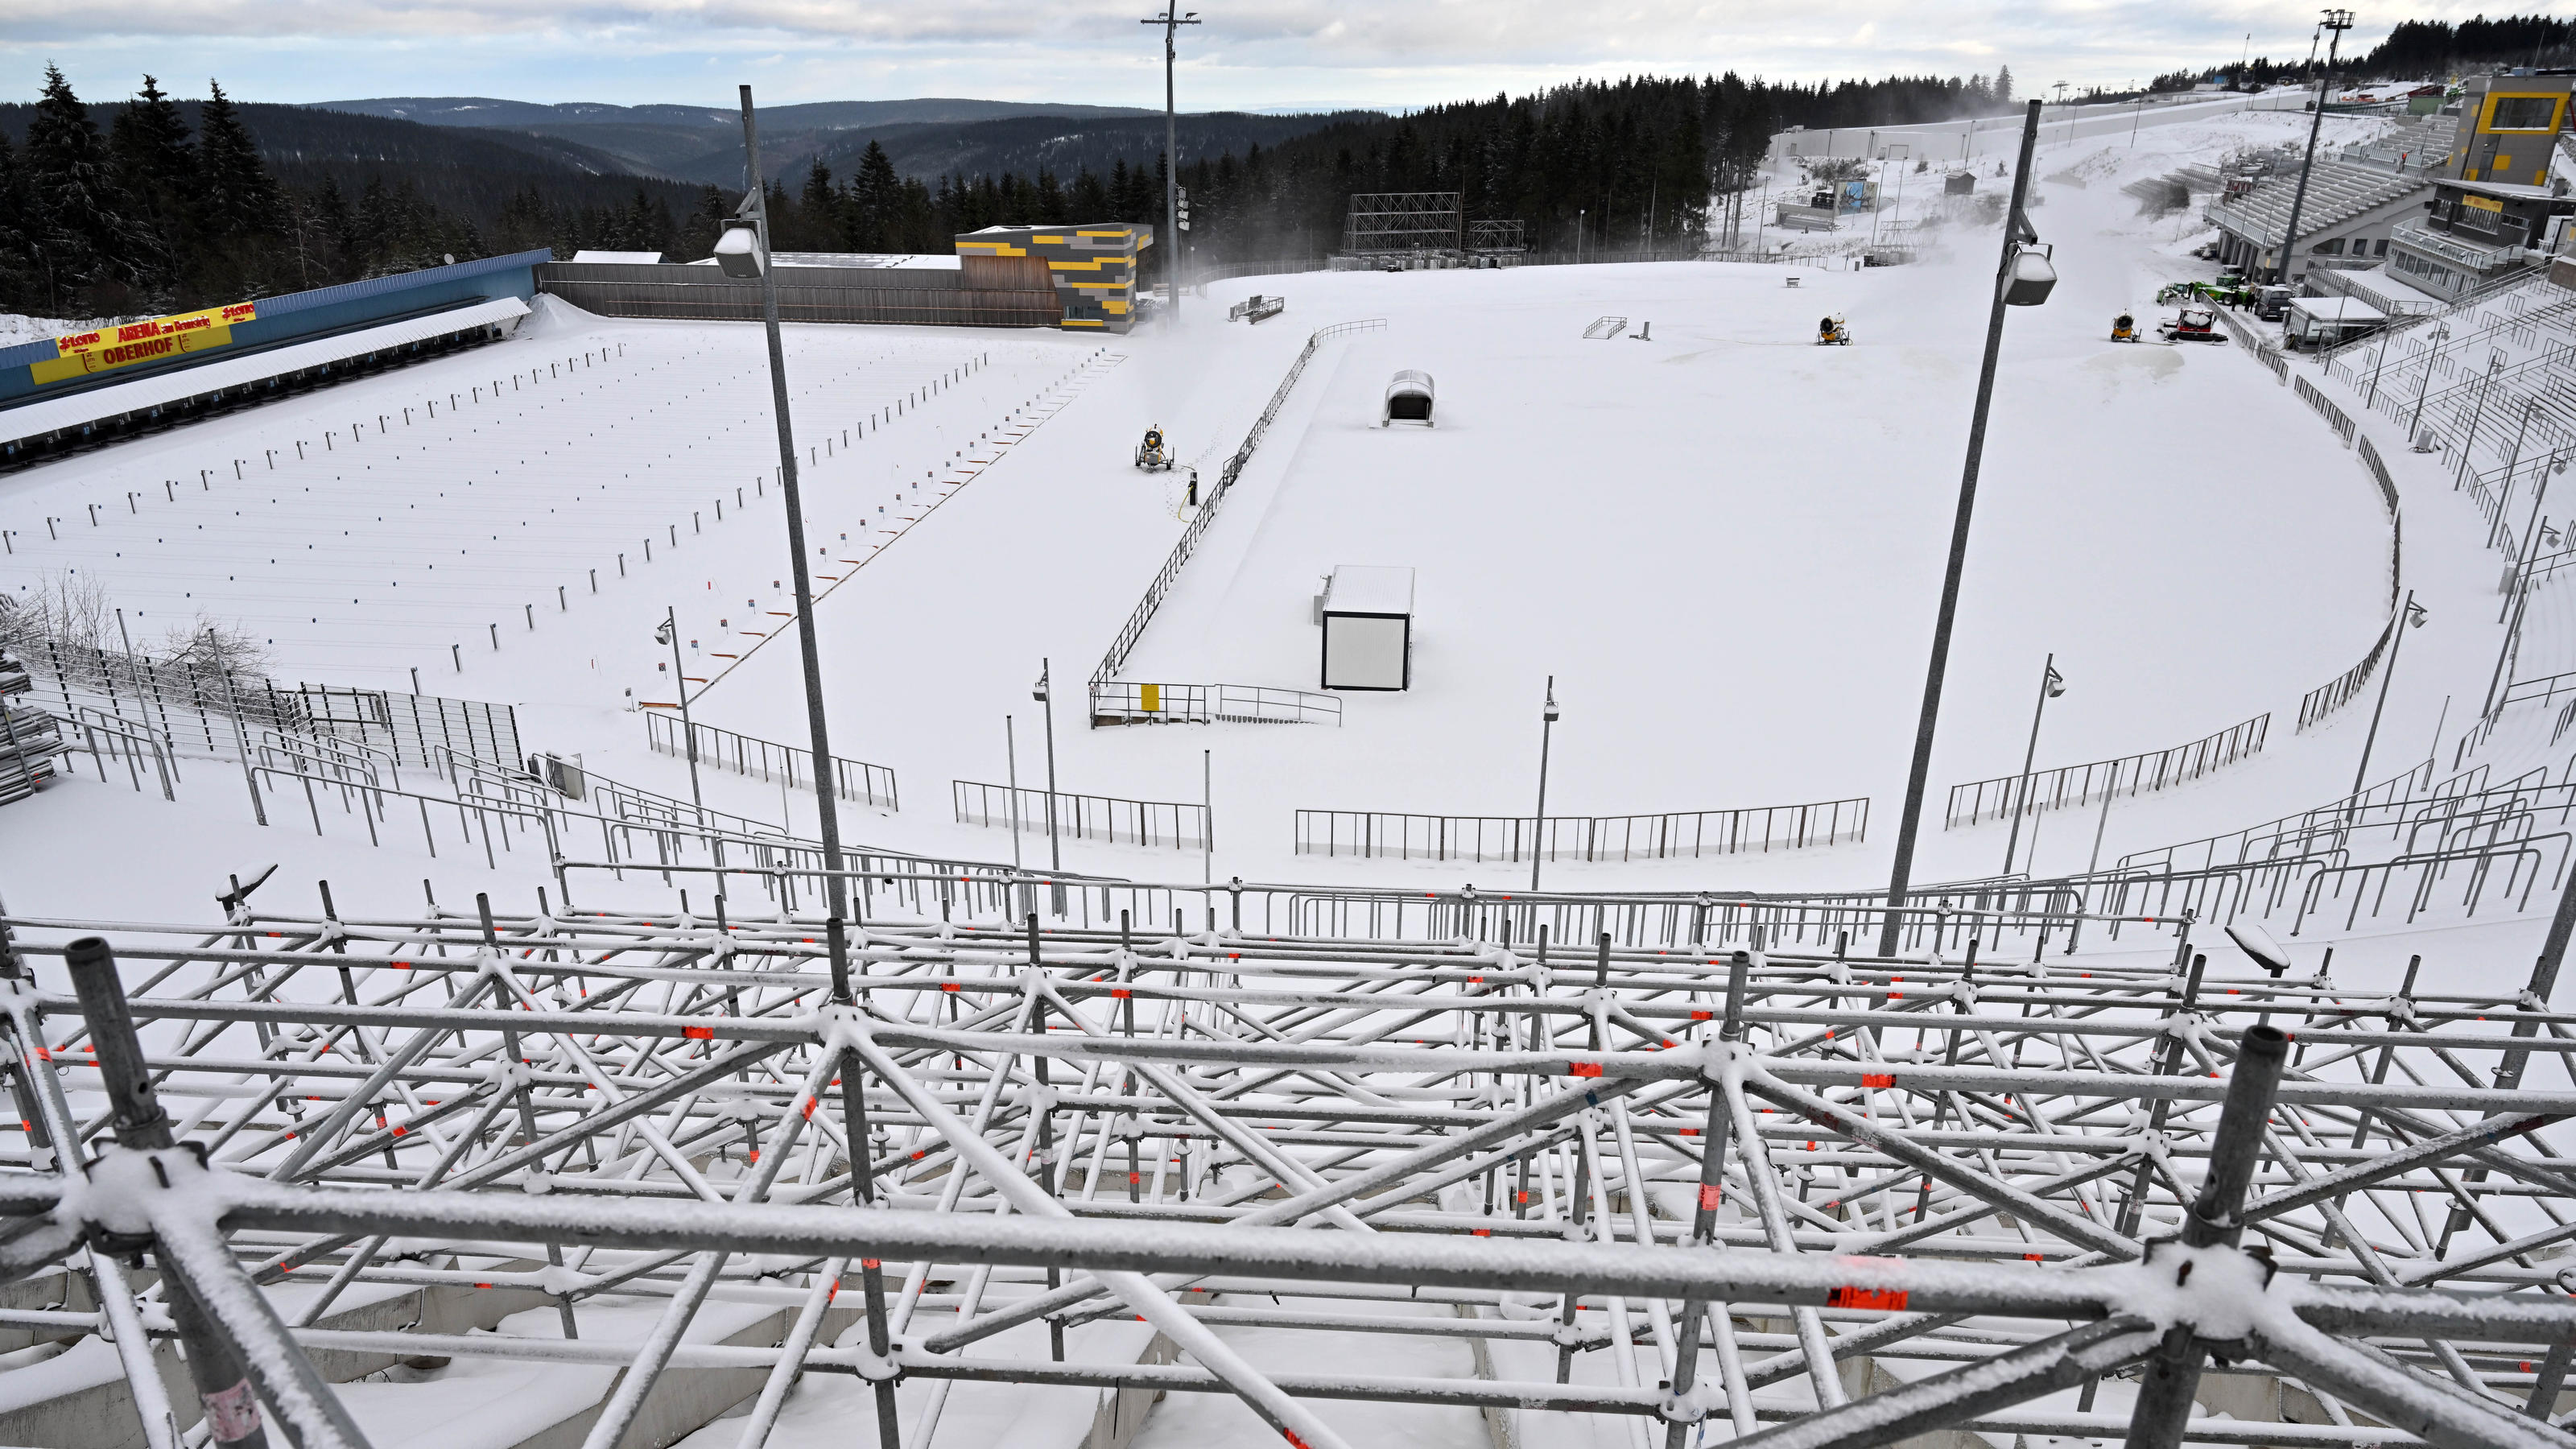 Gute Bedingungen in Oberhof: Die Arena am Rennsteig zeigt sich bereits im winterlichen Weiß.